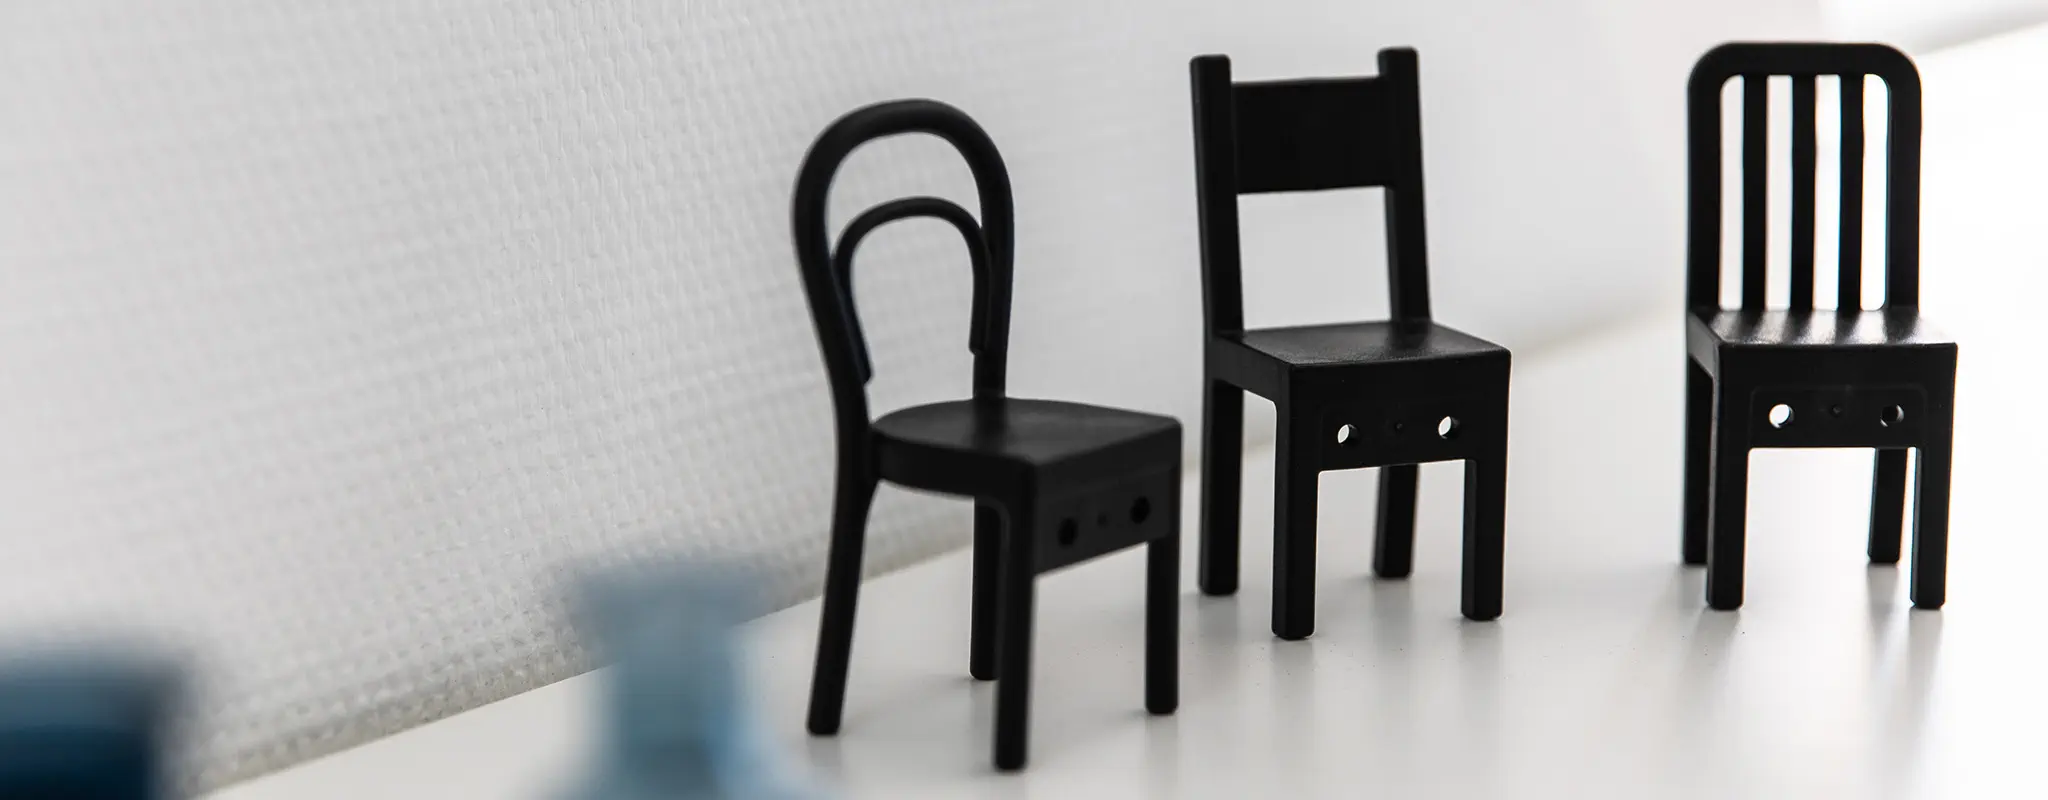 Drei schwarze Miniaturstühle auf einem weißen Regal